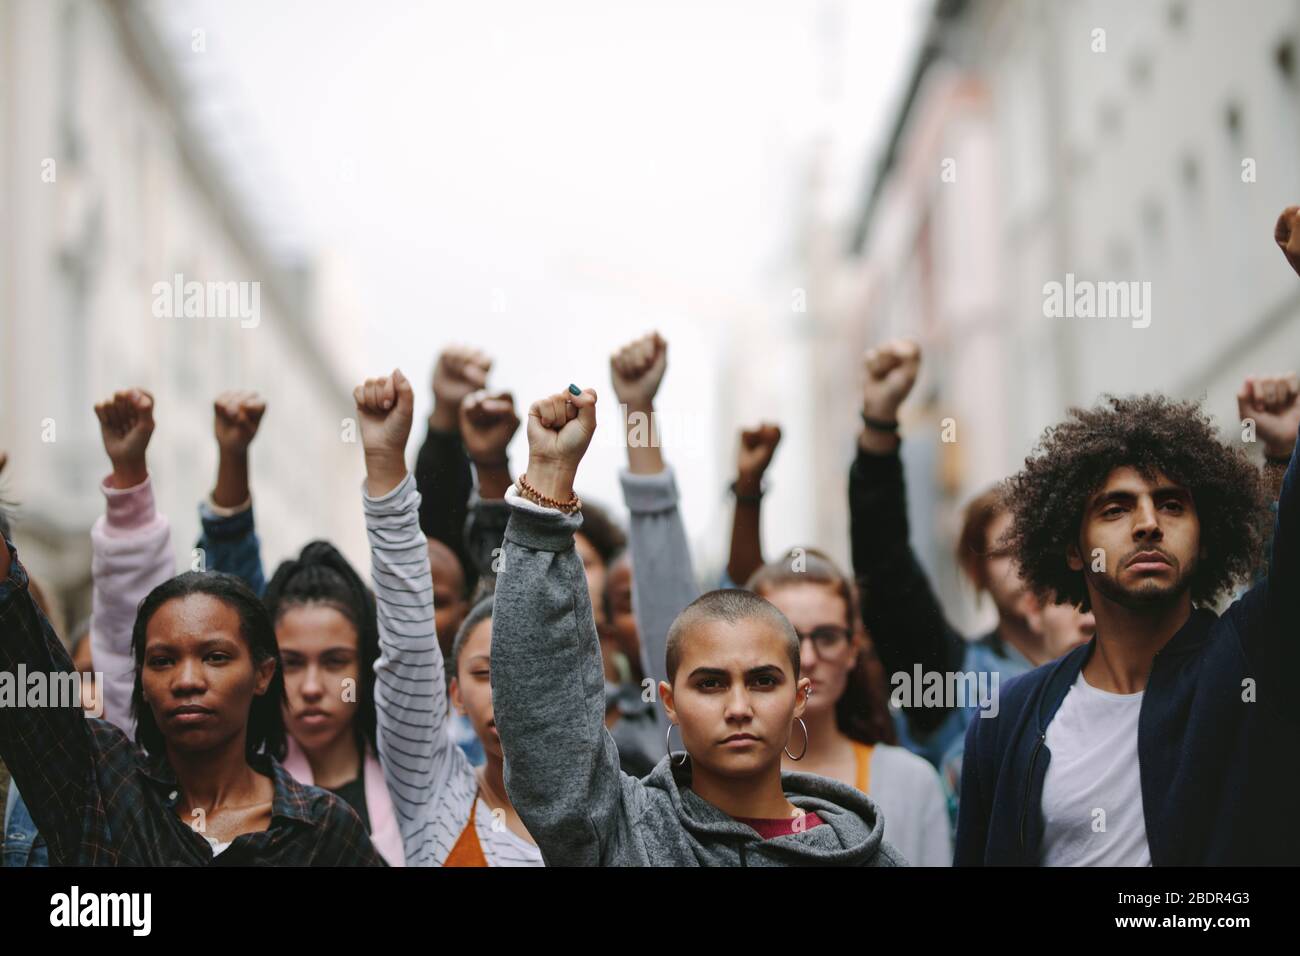 Groupe de manifestants avec leurs poings élevés dans l'air. Des militants protestant dans la rue. Banque D'Images